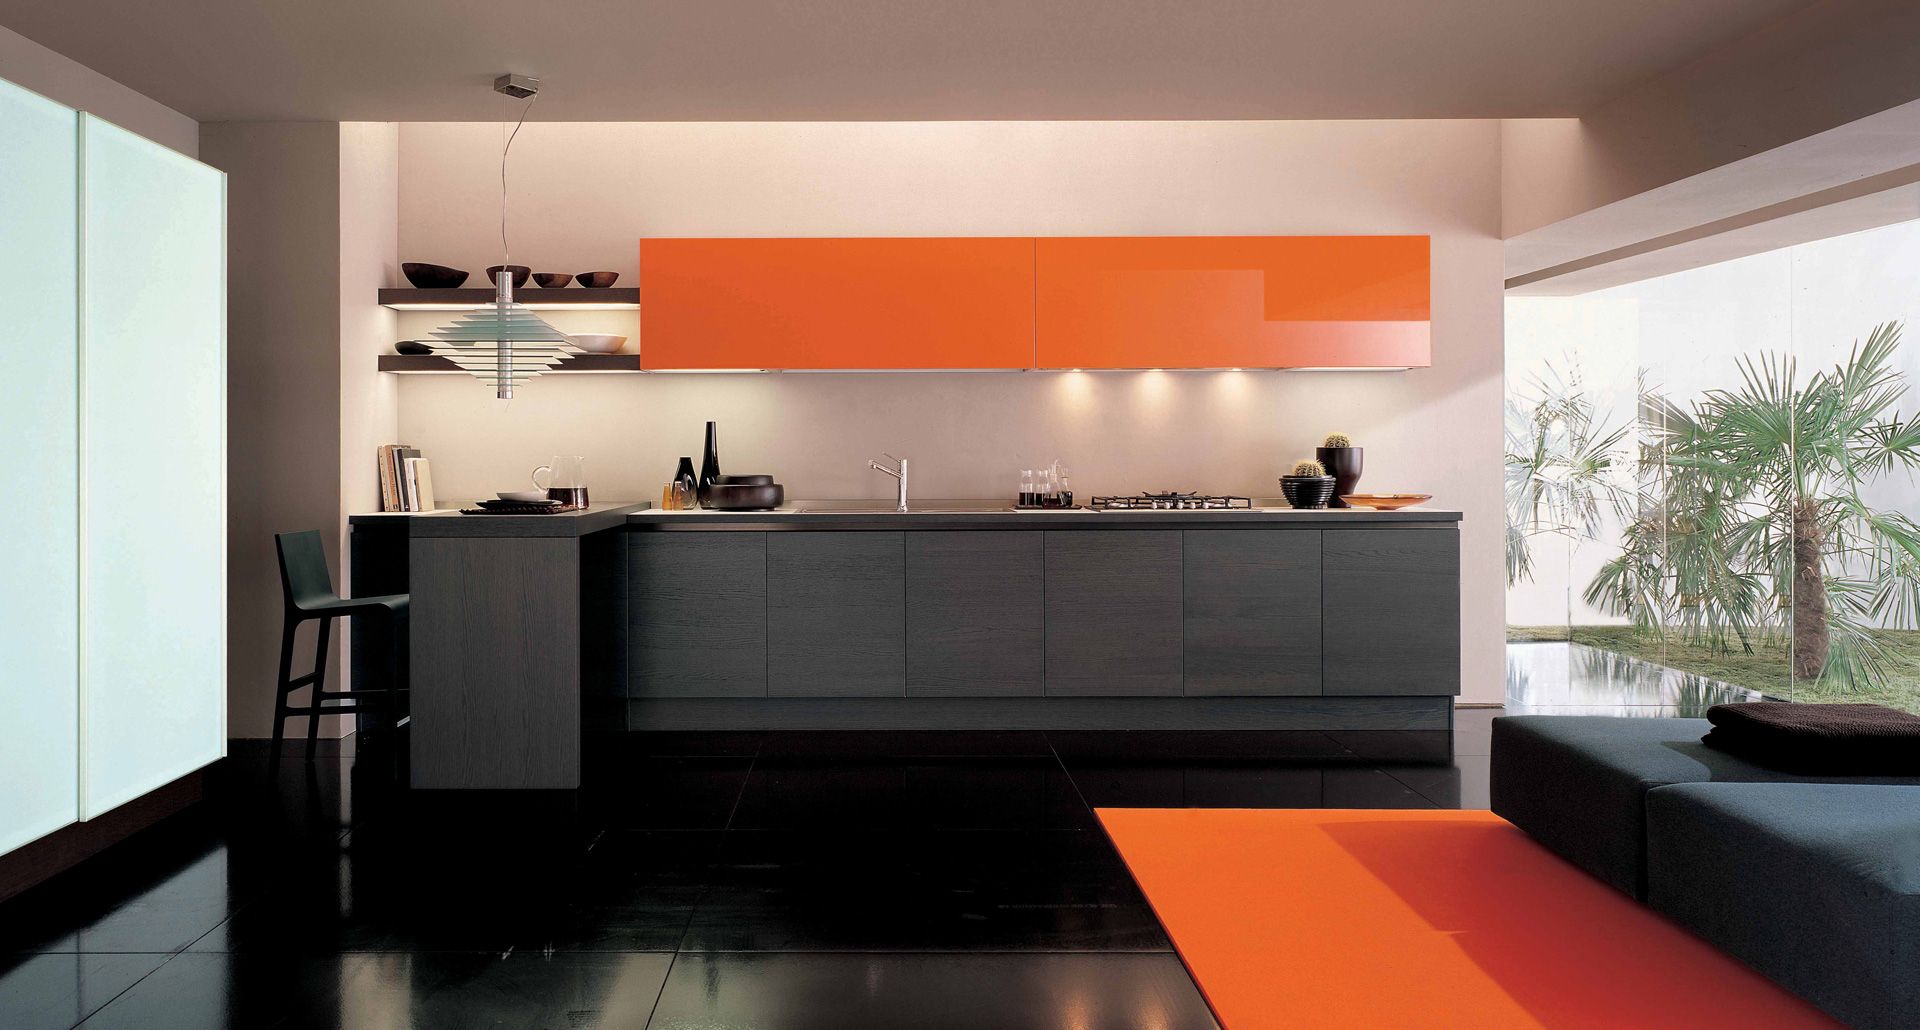 Odważne połączenie szarości z kolorem pomarańczowym w połysku. Kolorowa górna zabudowa ożywia wnętrze. Fot. Euromobil Kitchen